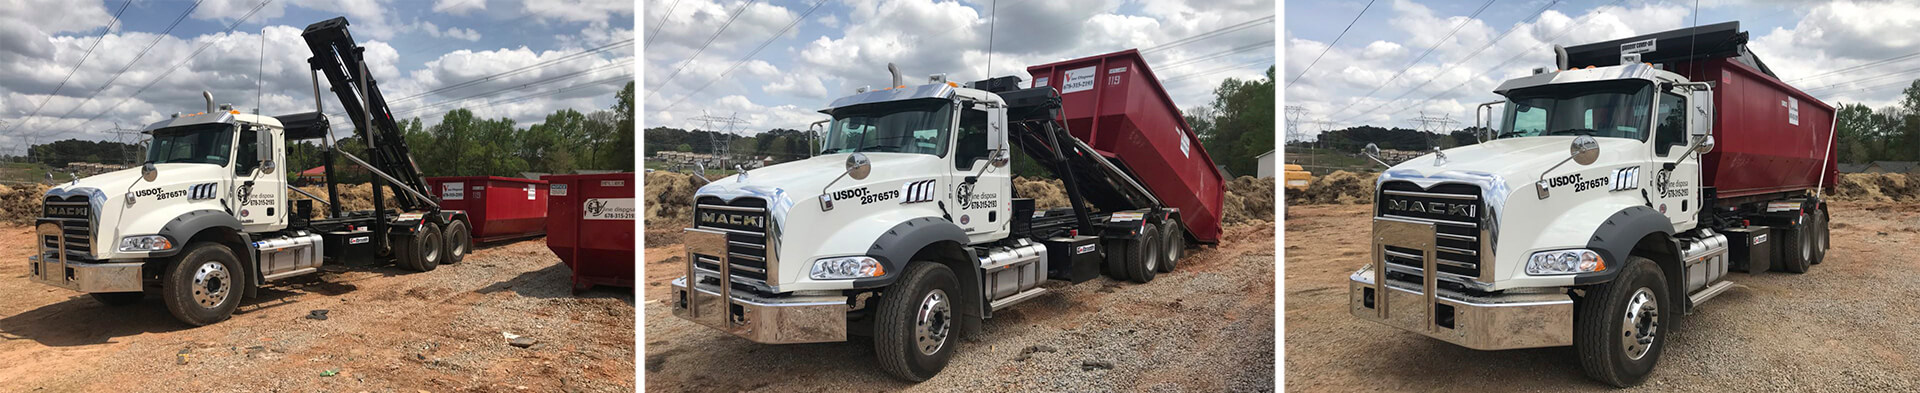 Roll-Off Dumpster Rental in Marietta, GA